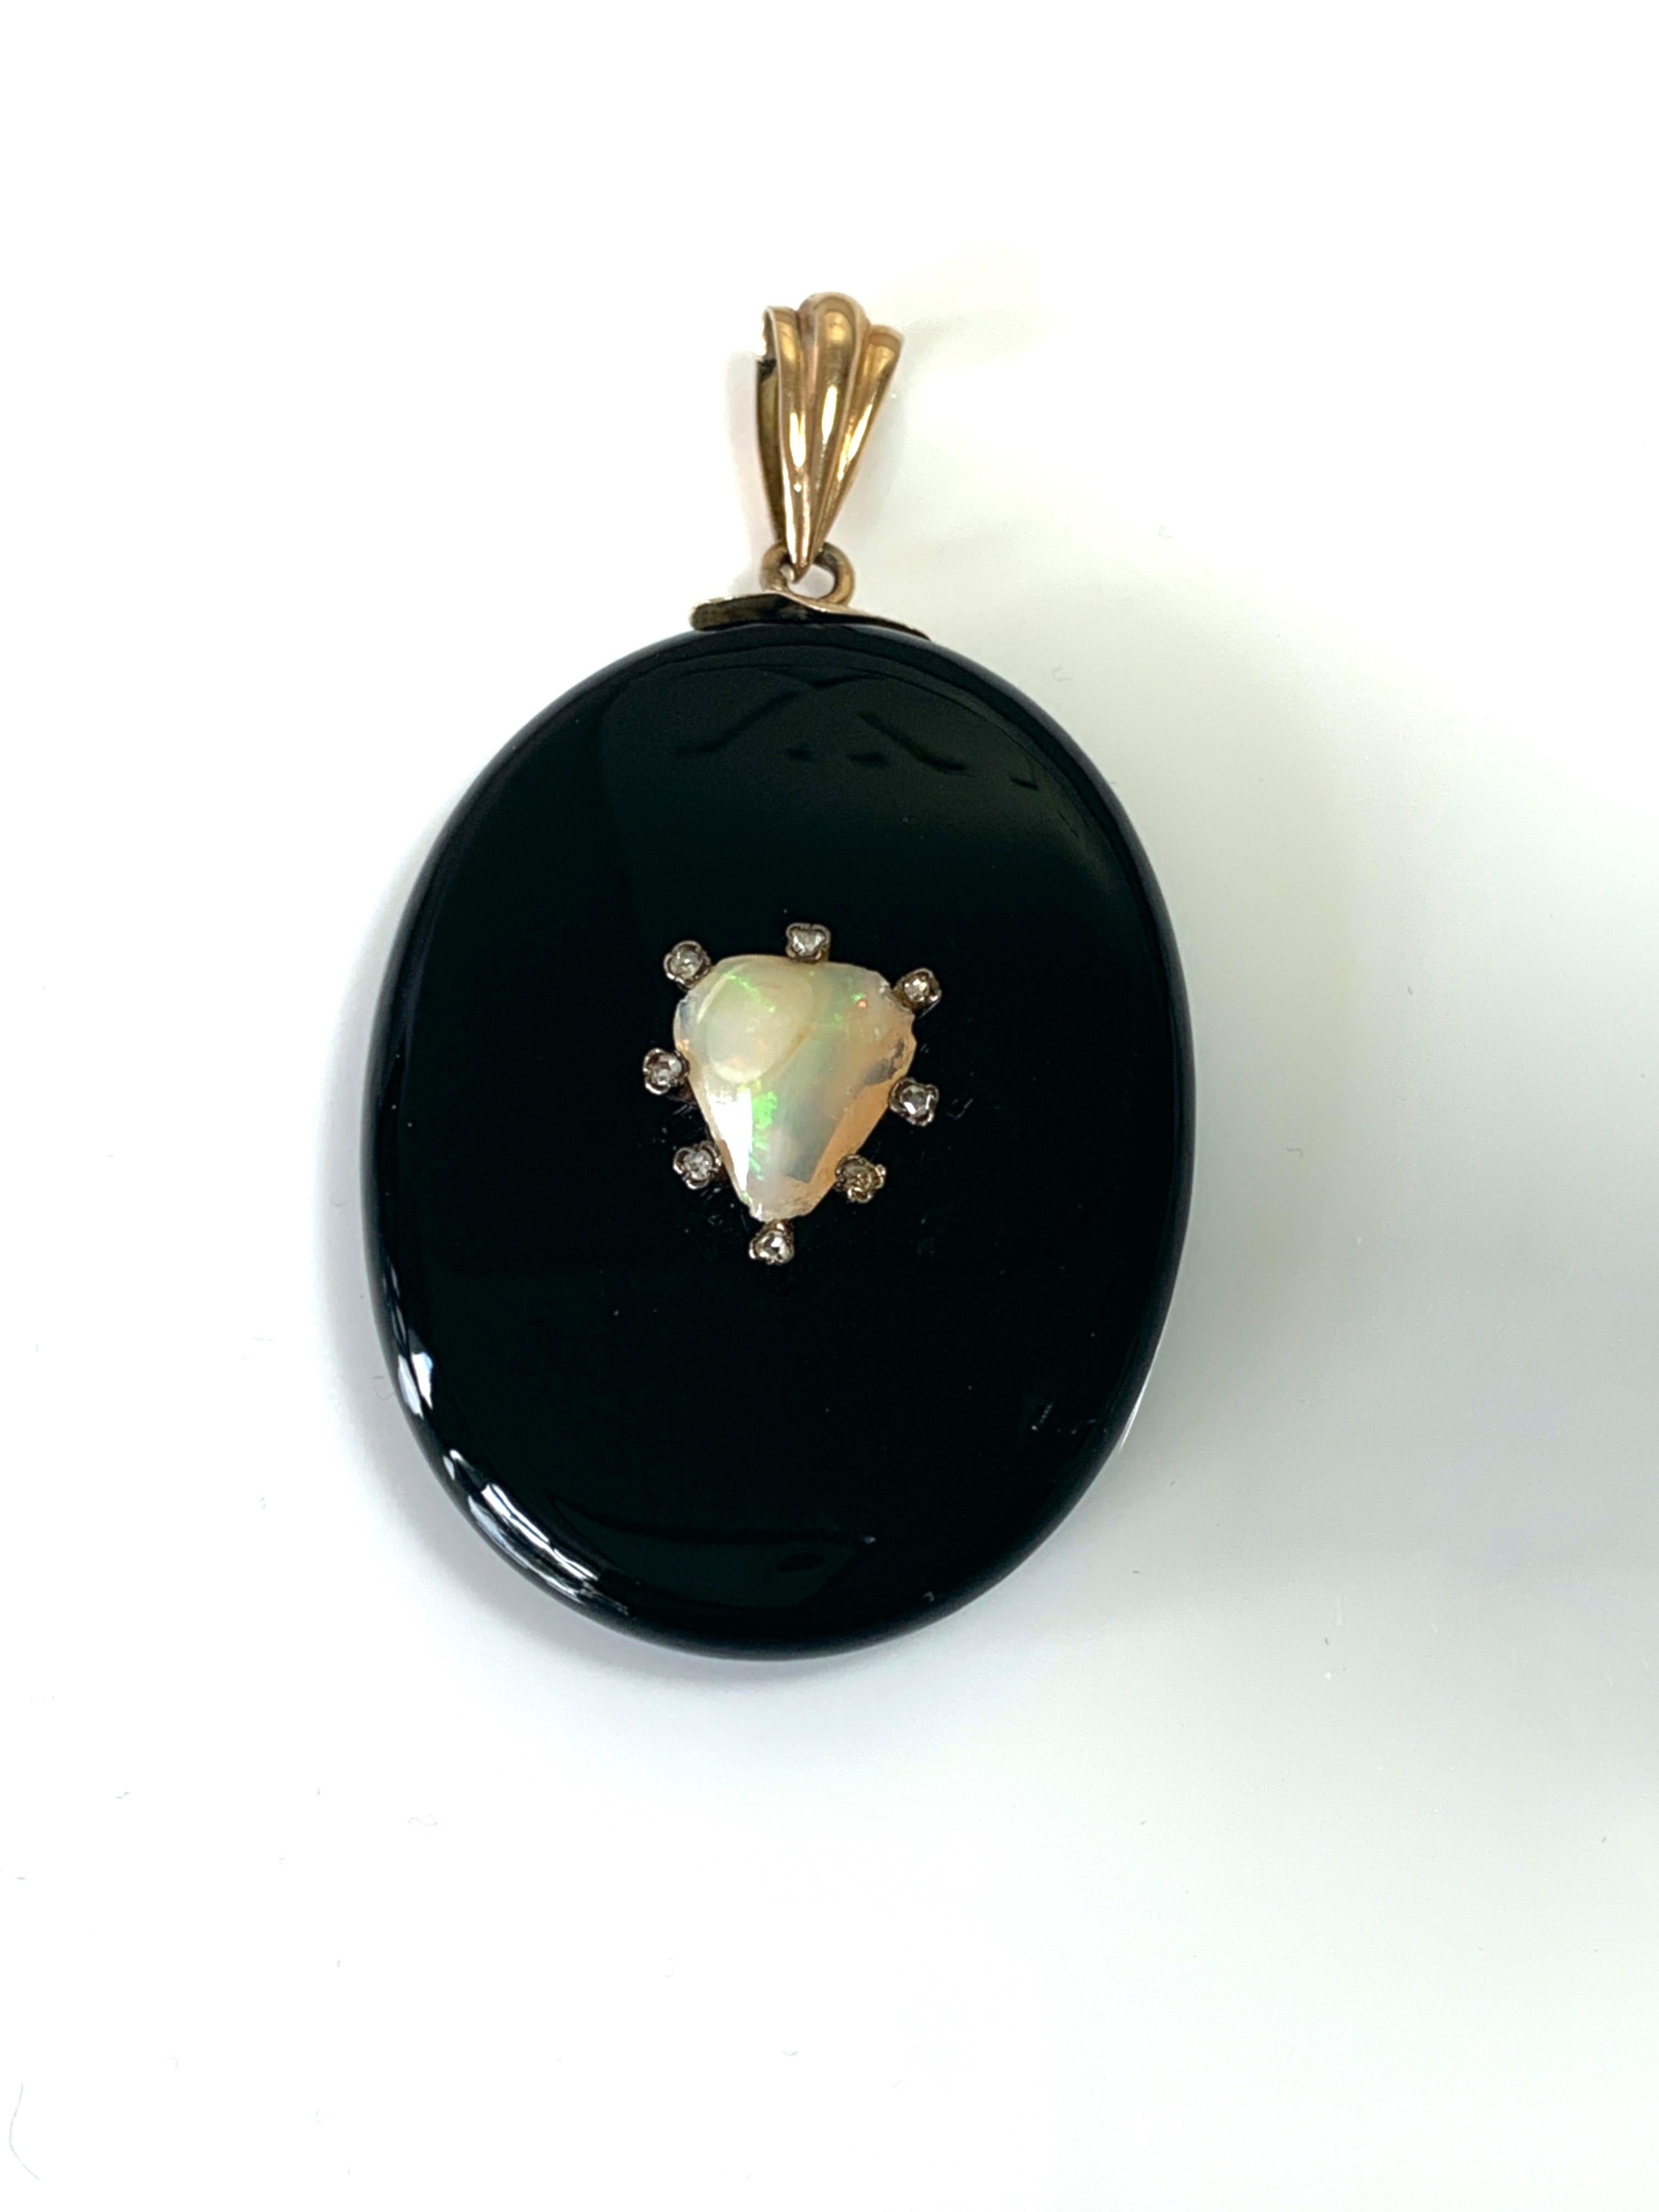 Médaillon de deuil ancien de l'époque édouardienne
avec un cœur central en opale taillé à la main (13 mm x 10 mm)
entouré de huit diamants naturels taillés à la mine (environ 1,5-1,75 mm chacun)
Fabriqué en pierre d'onyx noir - serti de  un collier